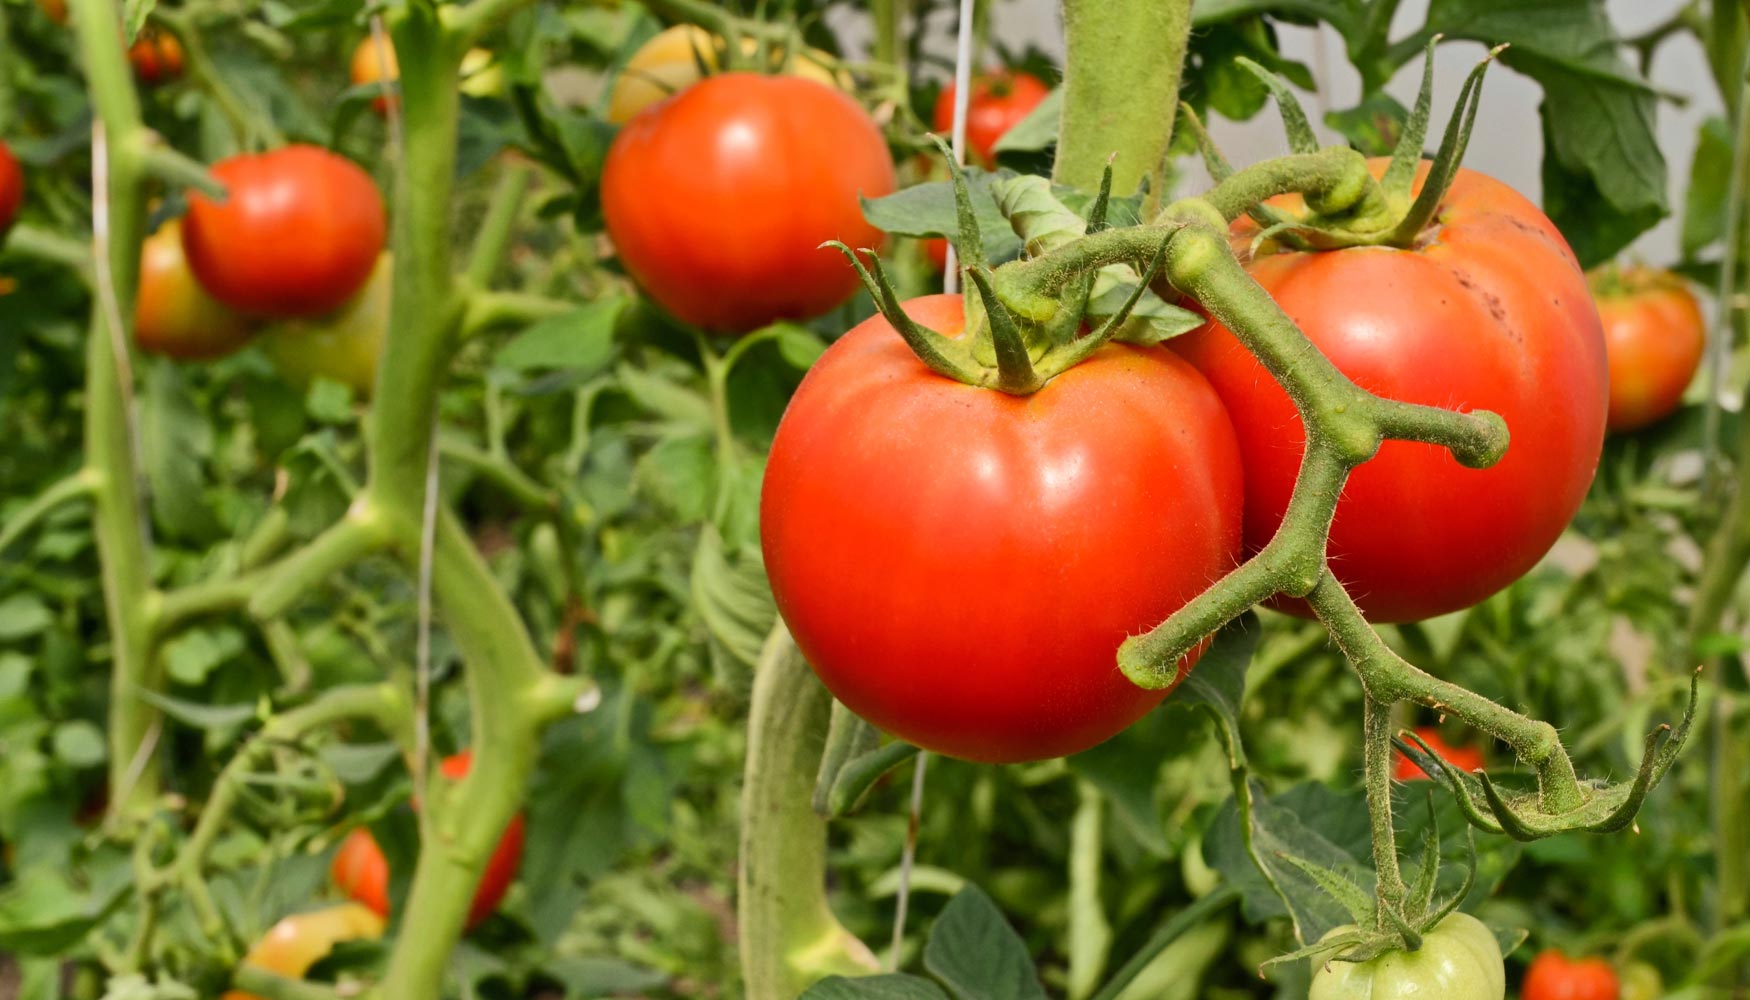 Los tomates ayudan a prevenir el cáncer de hígado, según científicos